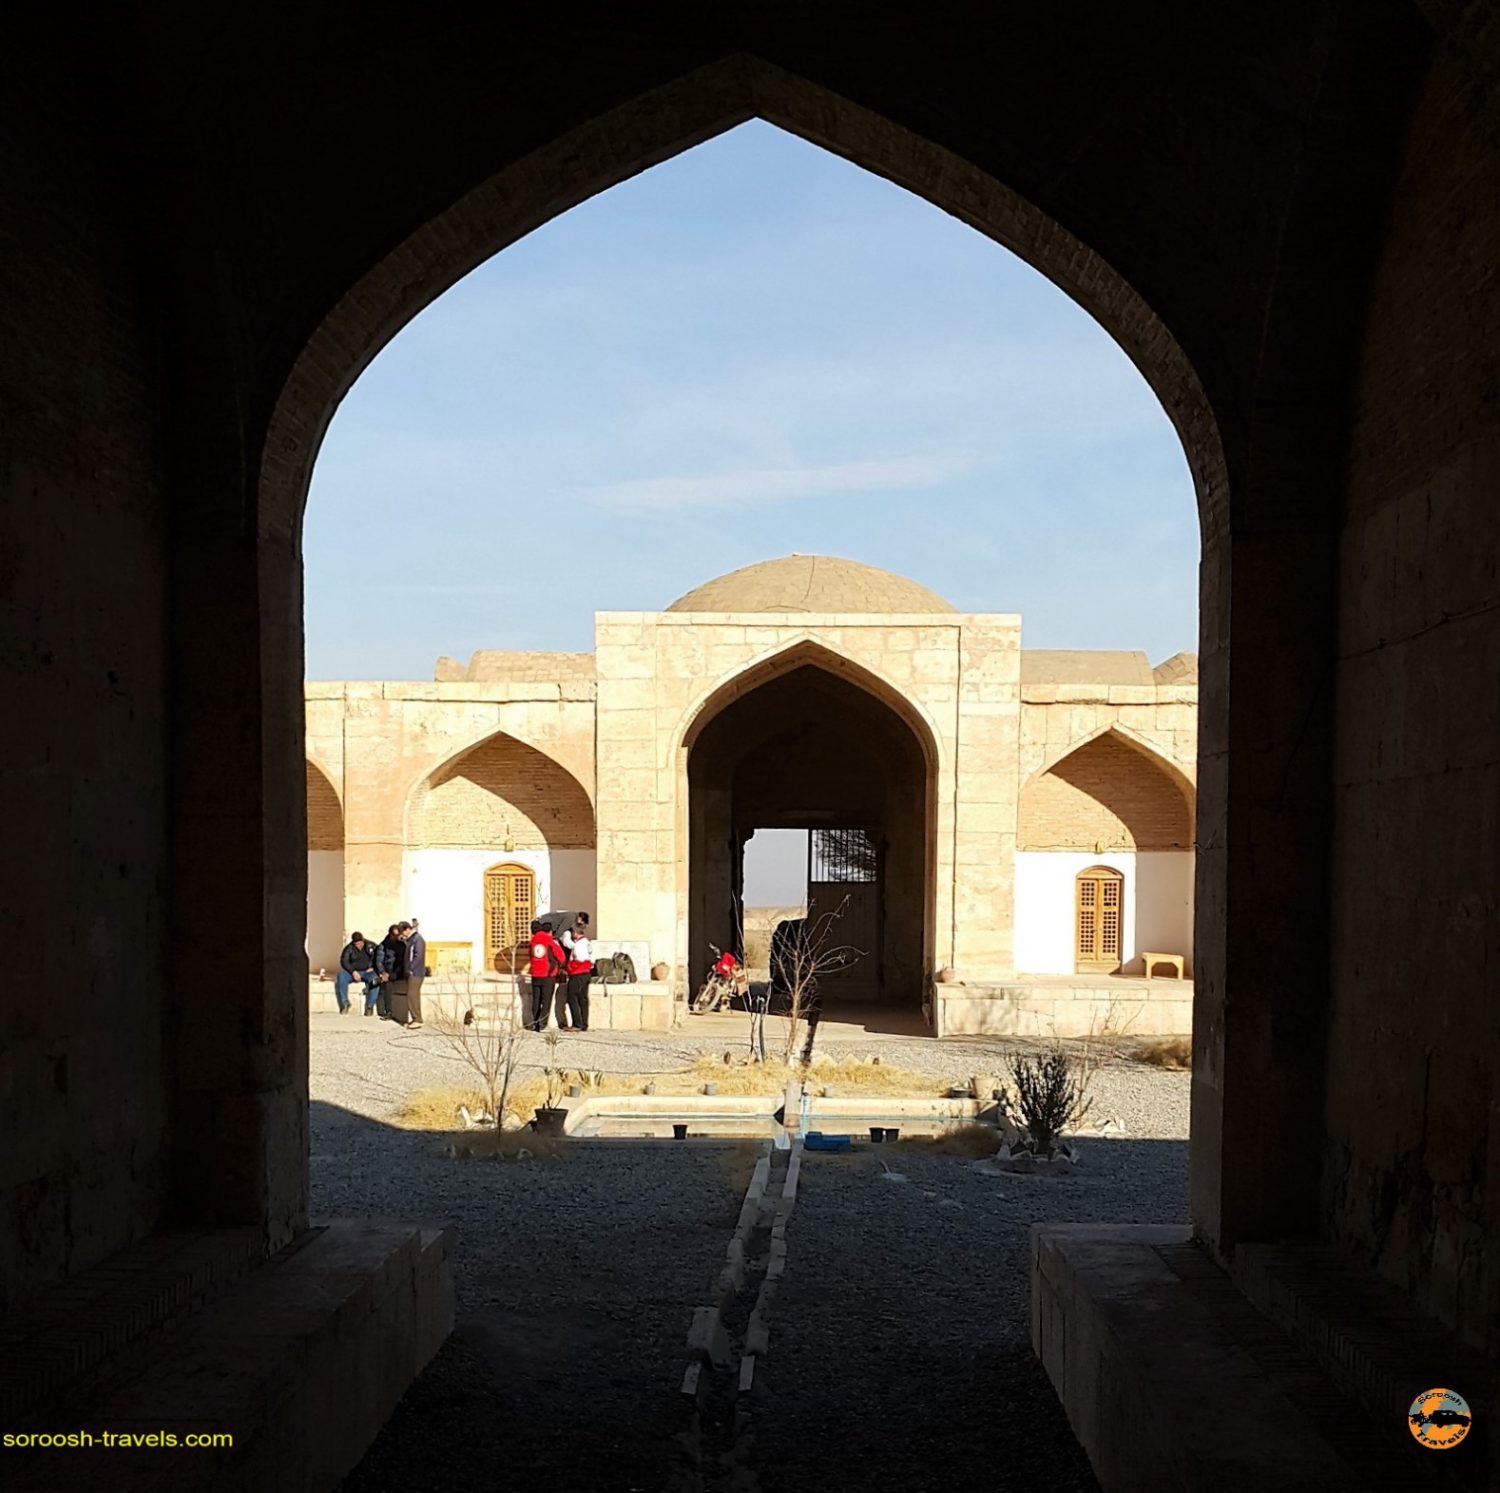 اقامت در کاروانسرای قصر بهرام ، کویر مرکزی ایران - زمستان ۱۳۹۶